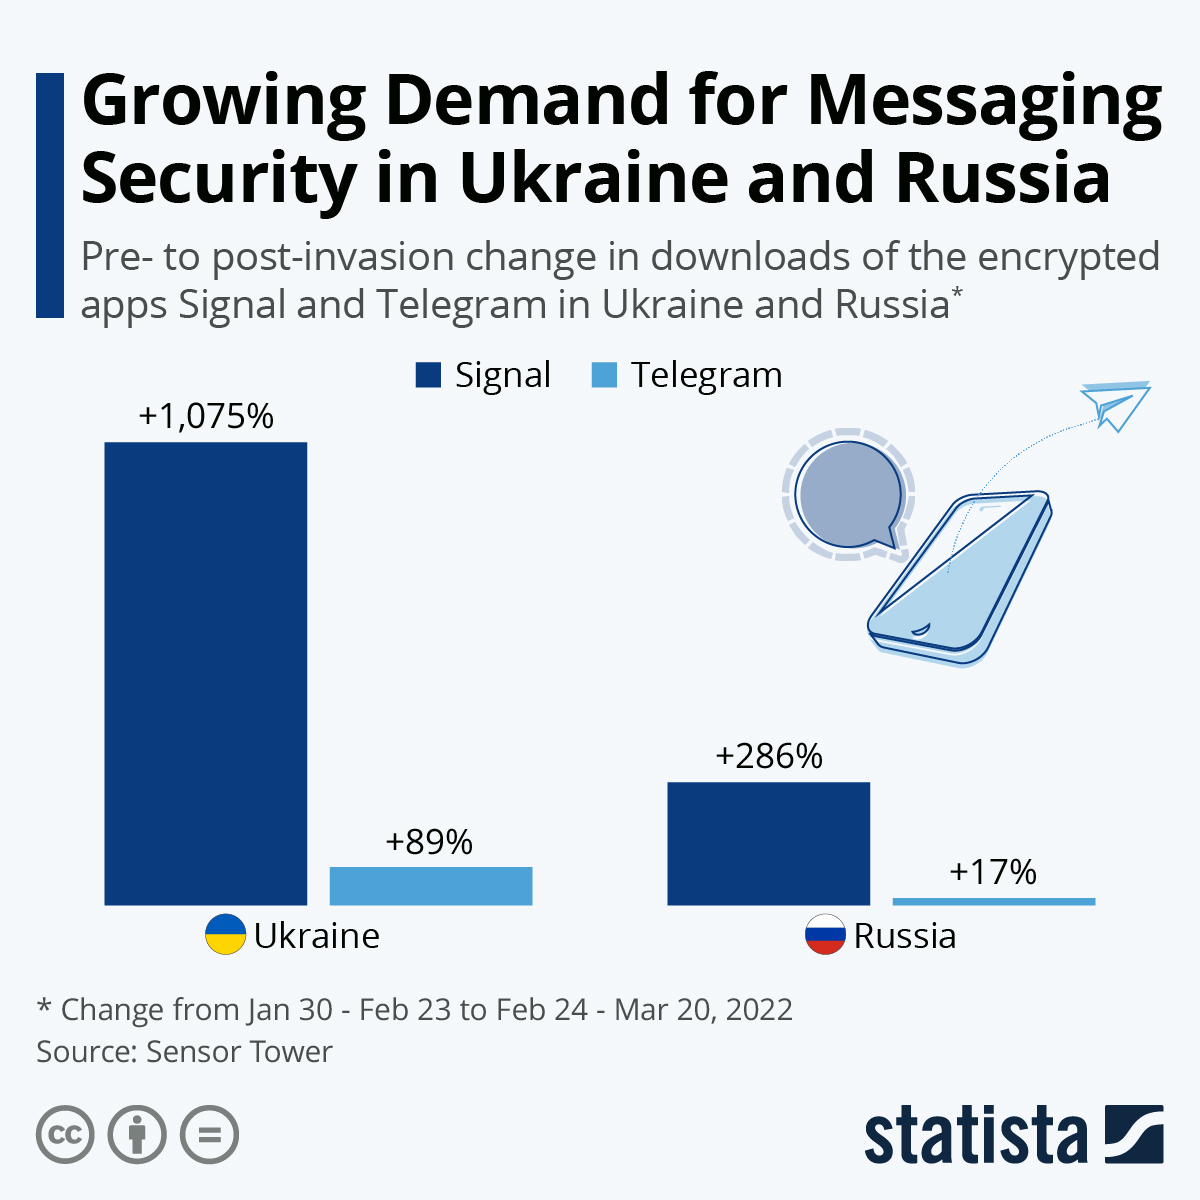 Загрузки приложений Signal и Telegram в Украине и России до и после начала войны